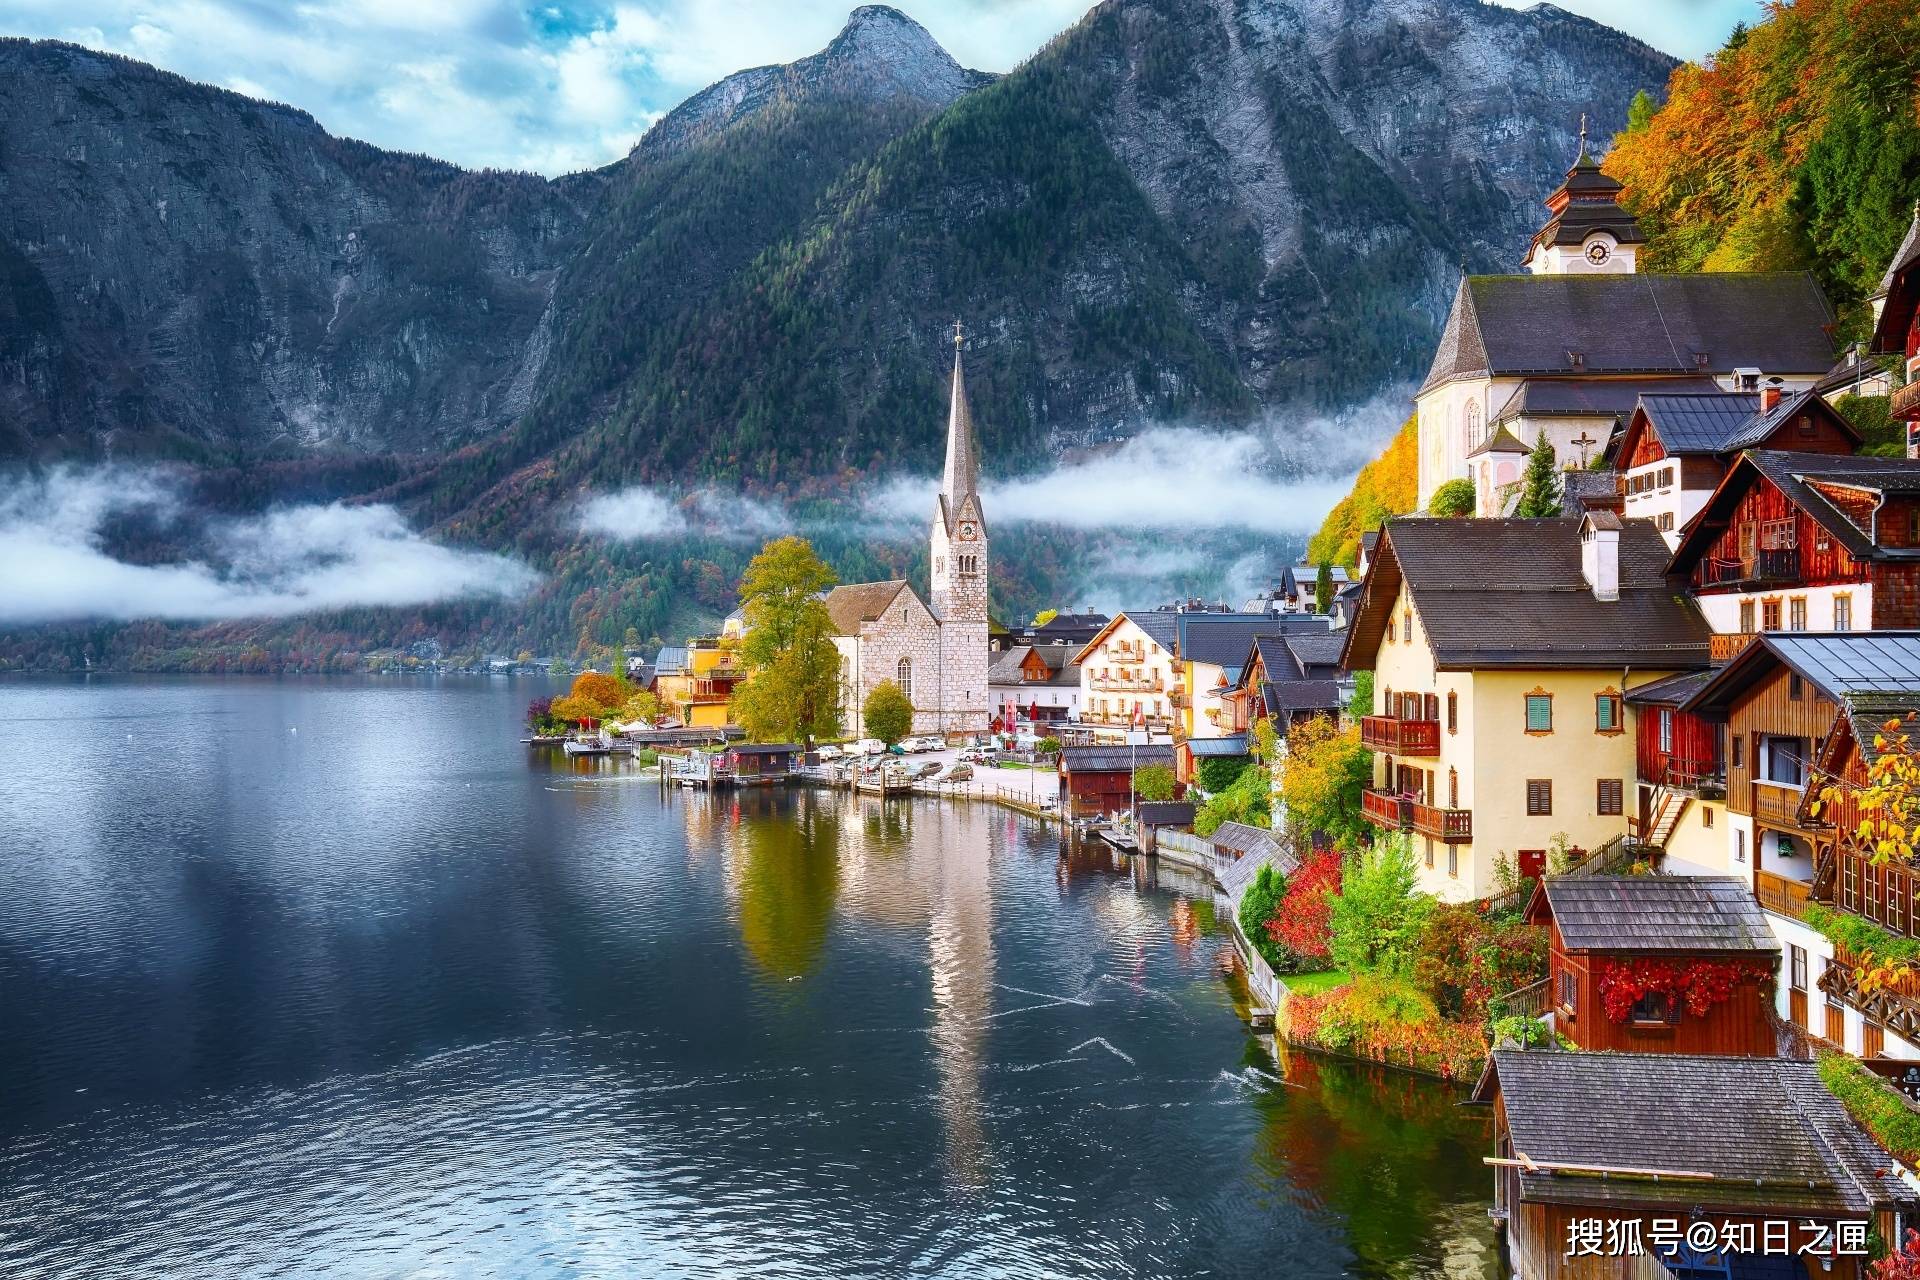 原创世界上最美丽的湖边小镇!童话中才有的世界——哈尔施塔特!